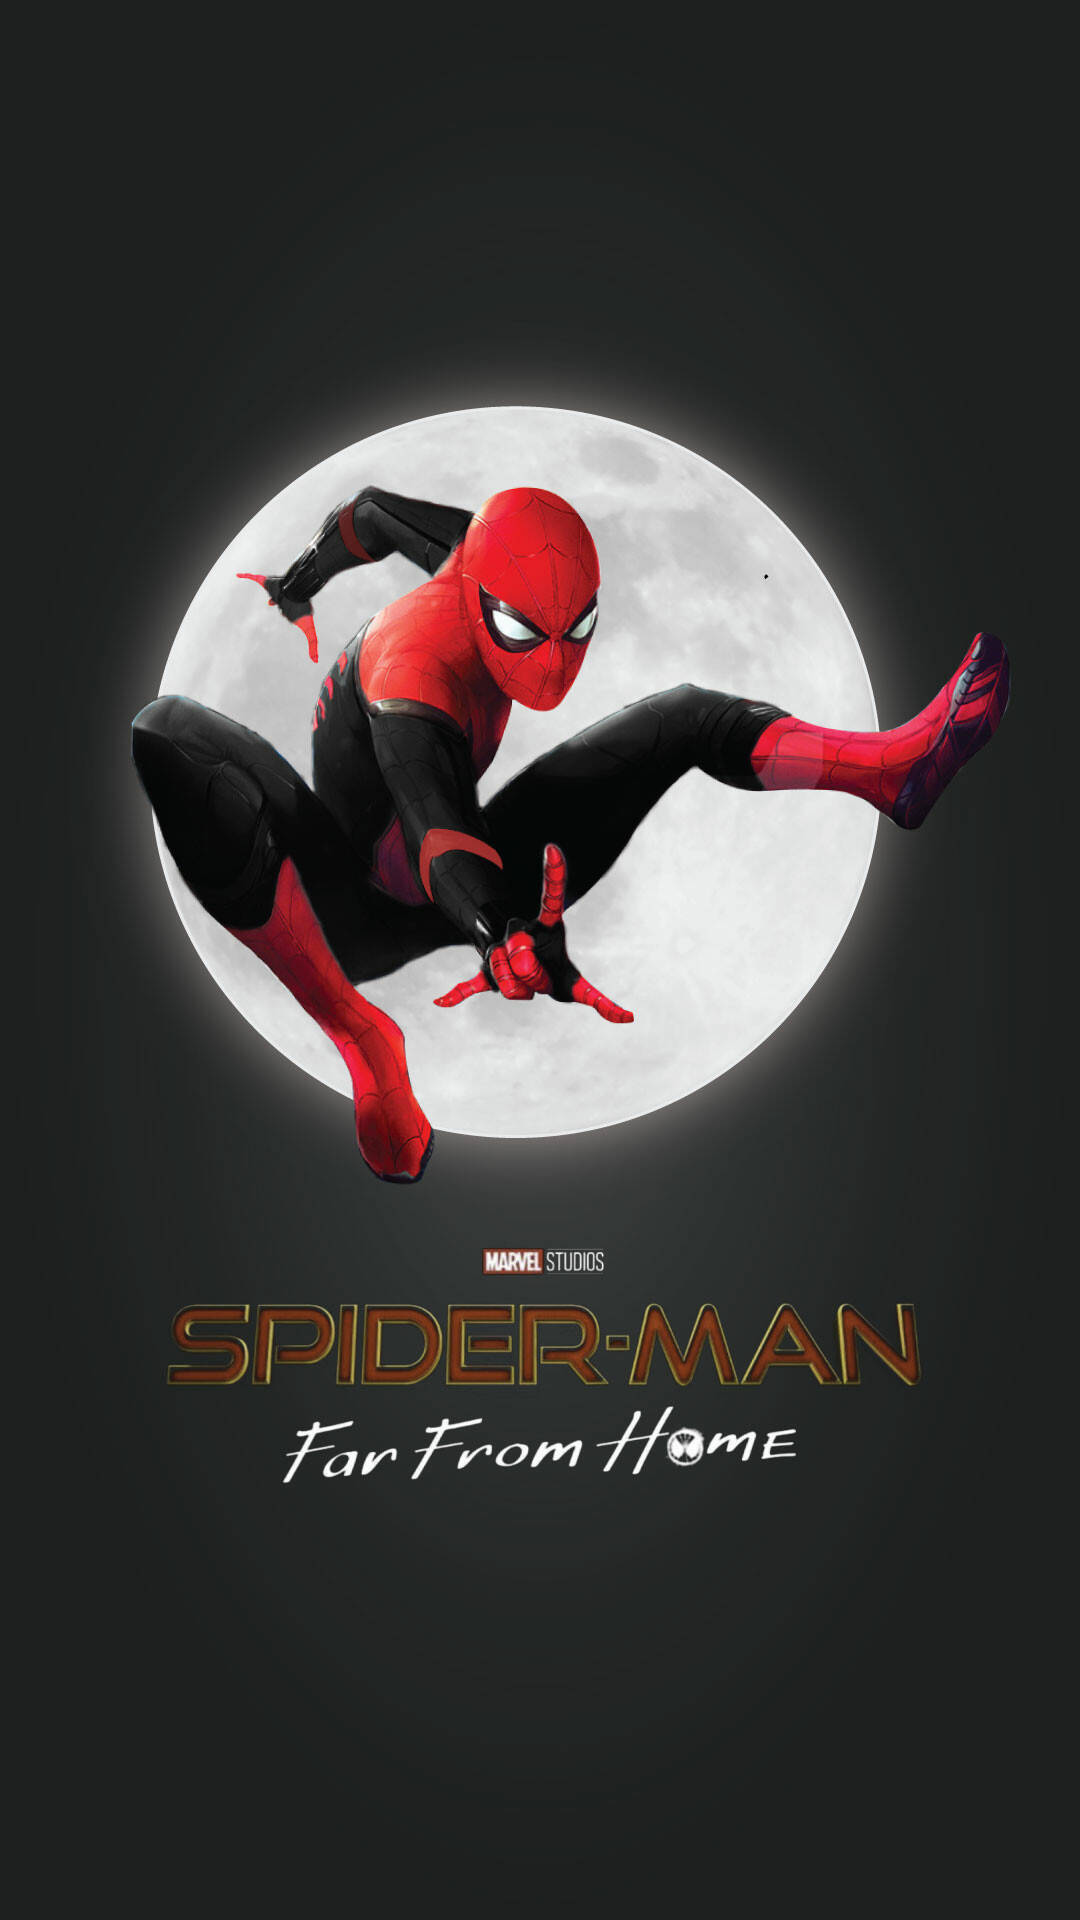 Free 4k Spider Man Wallpaper Downloads 100 4k Spider Man Wallpapers for  FREE  Wallpaperscom